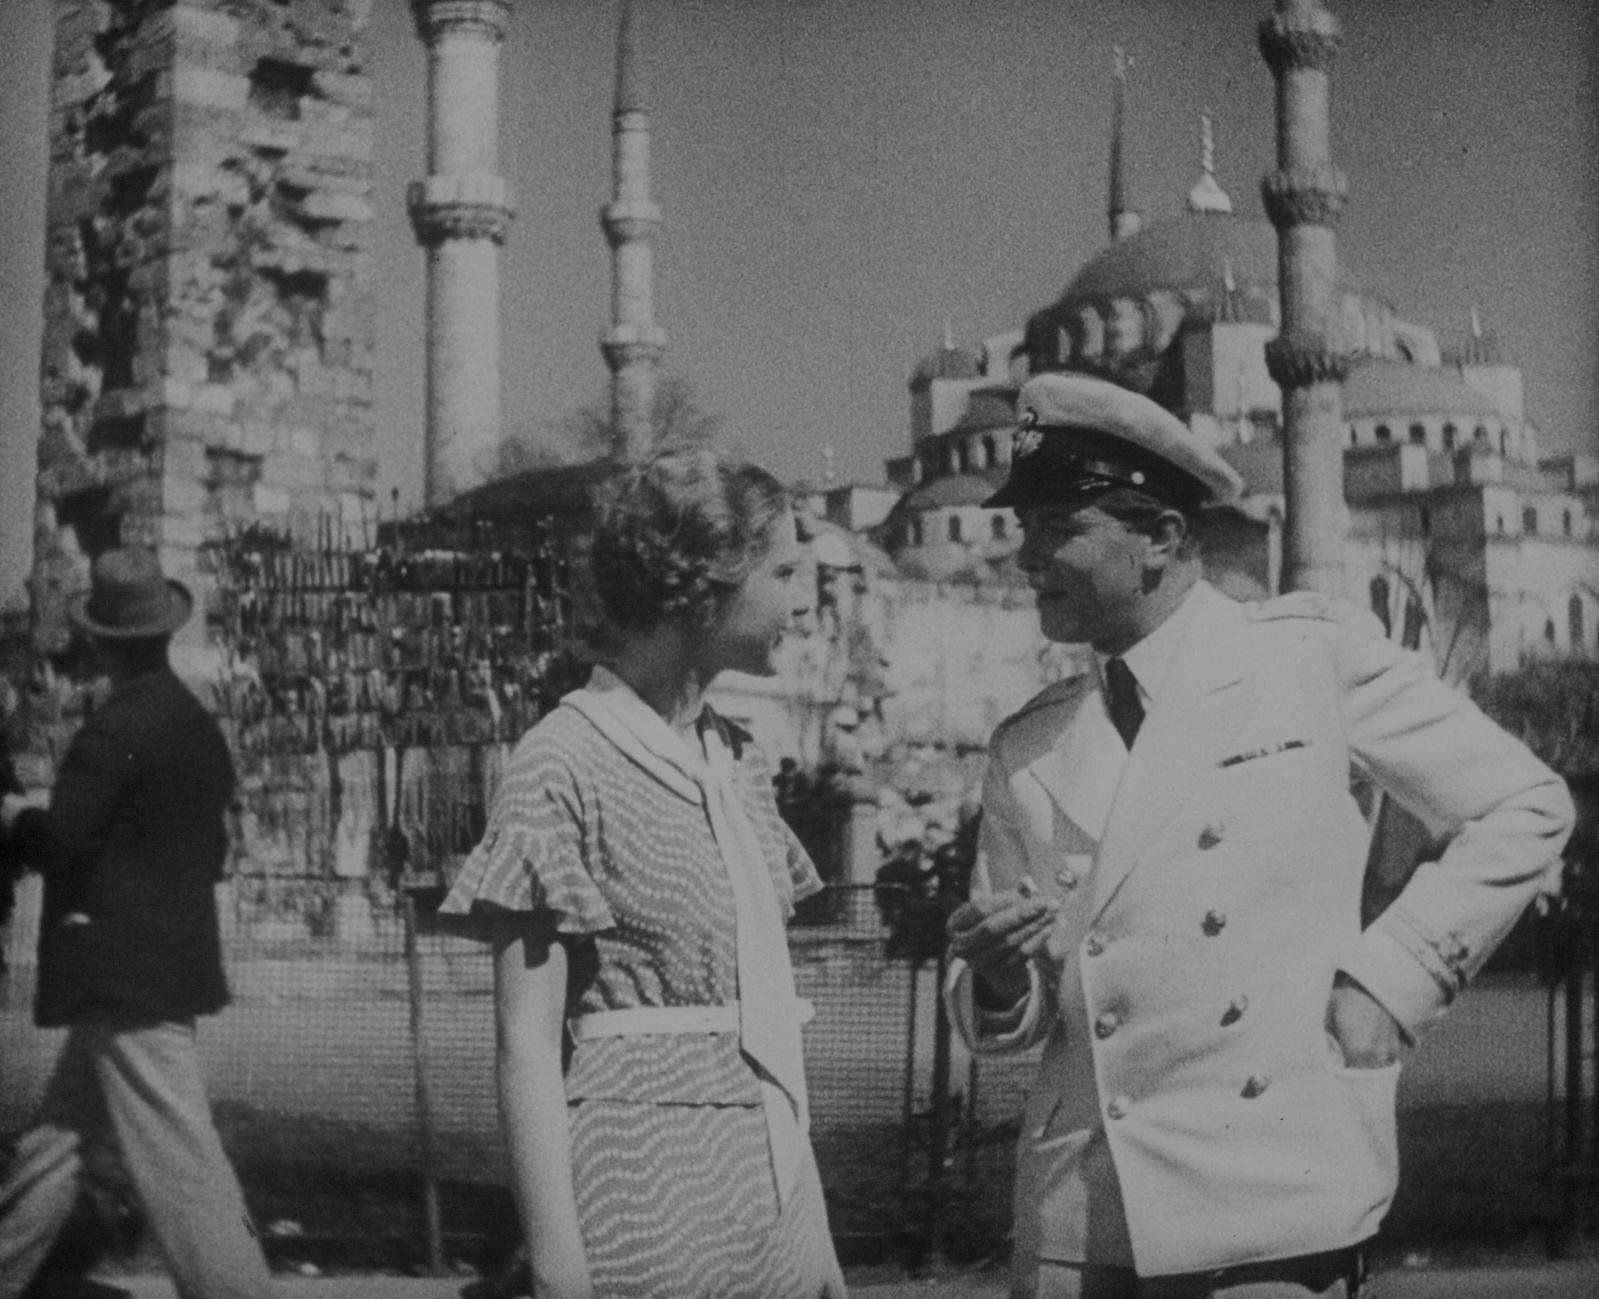 Die Nacht der grossen Liebe (1933) - Deutsche DVD-Premiere -  Ein Film von Géza von Bolváry mit Jarmila Novotna und Gustav Fröhlich - Limited Edition  (DVD)